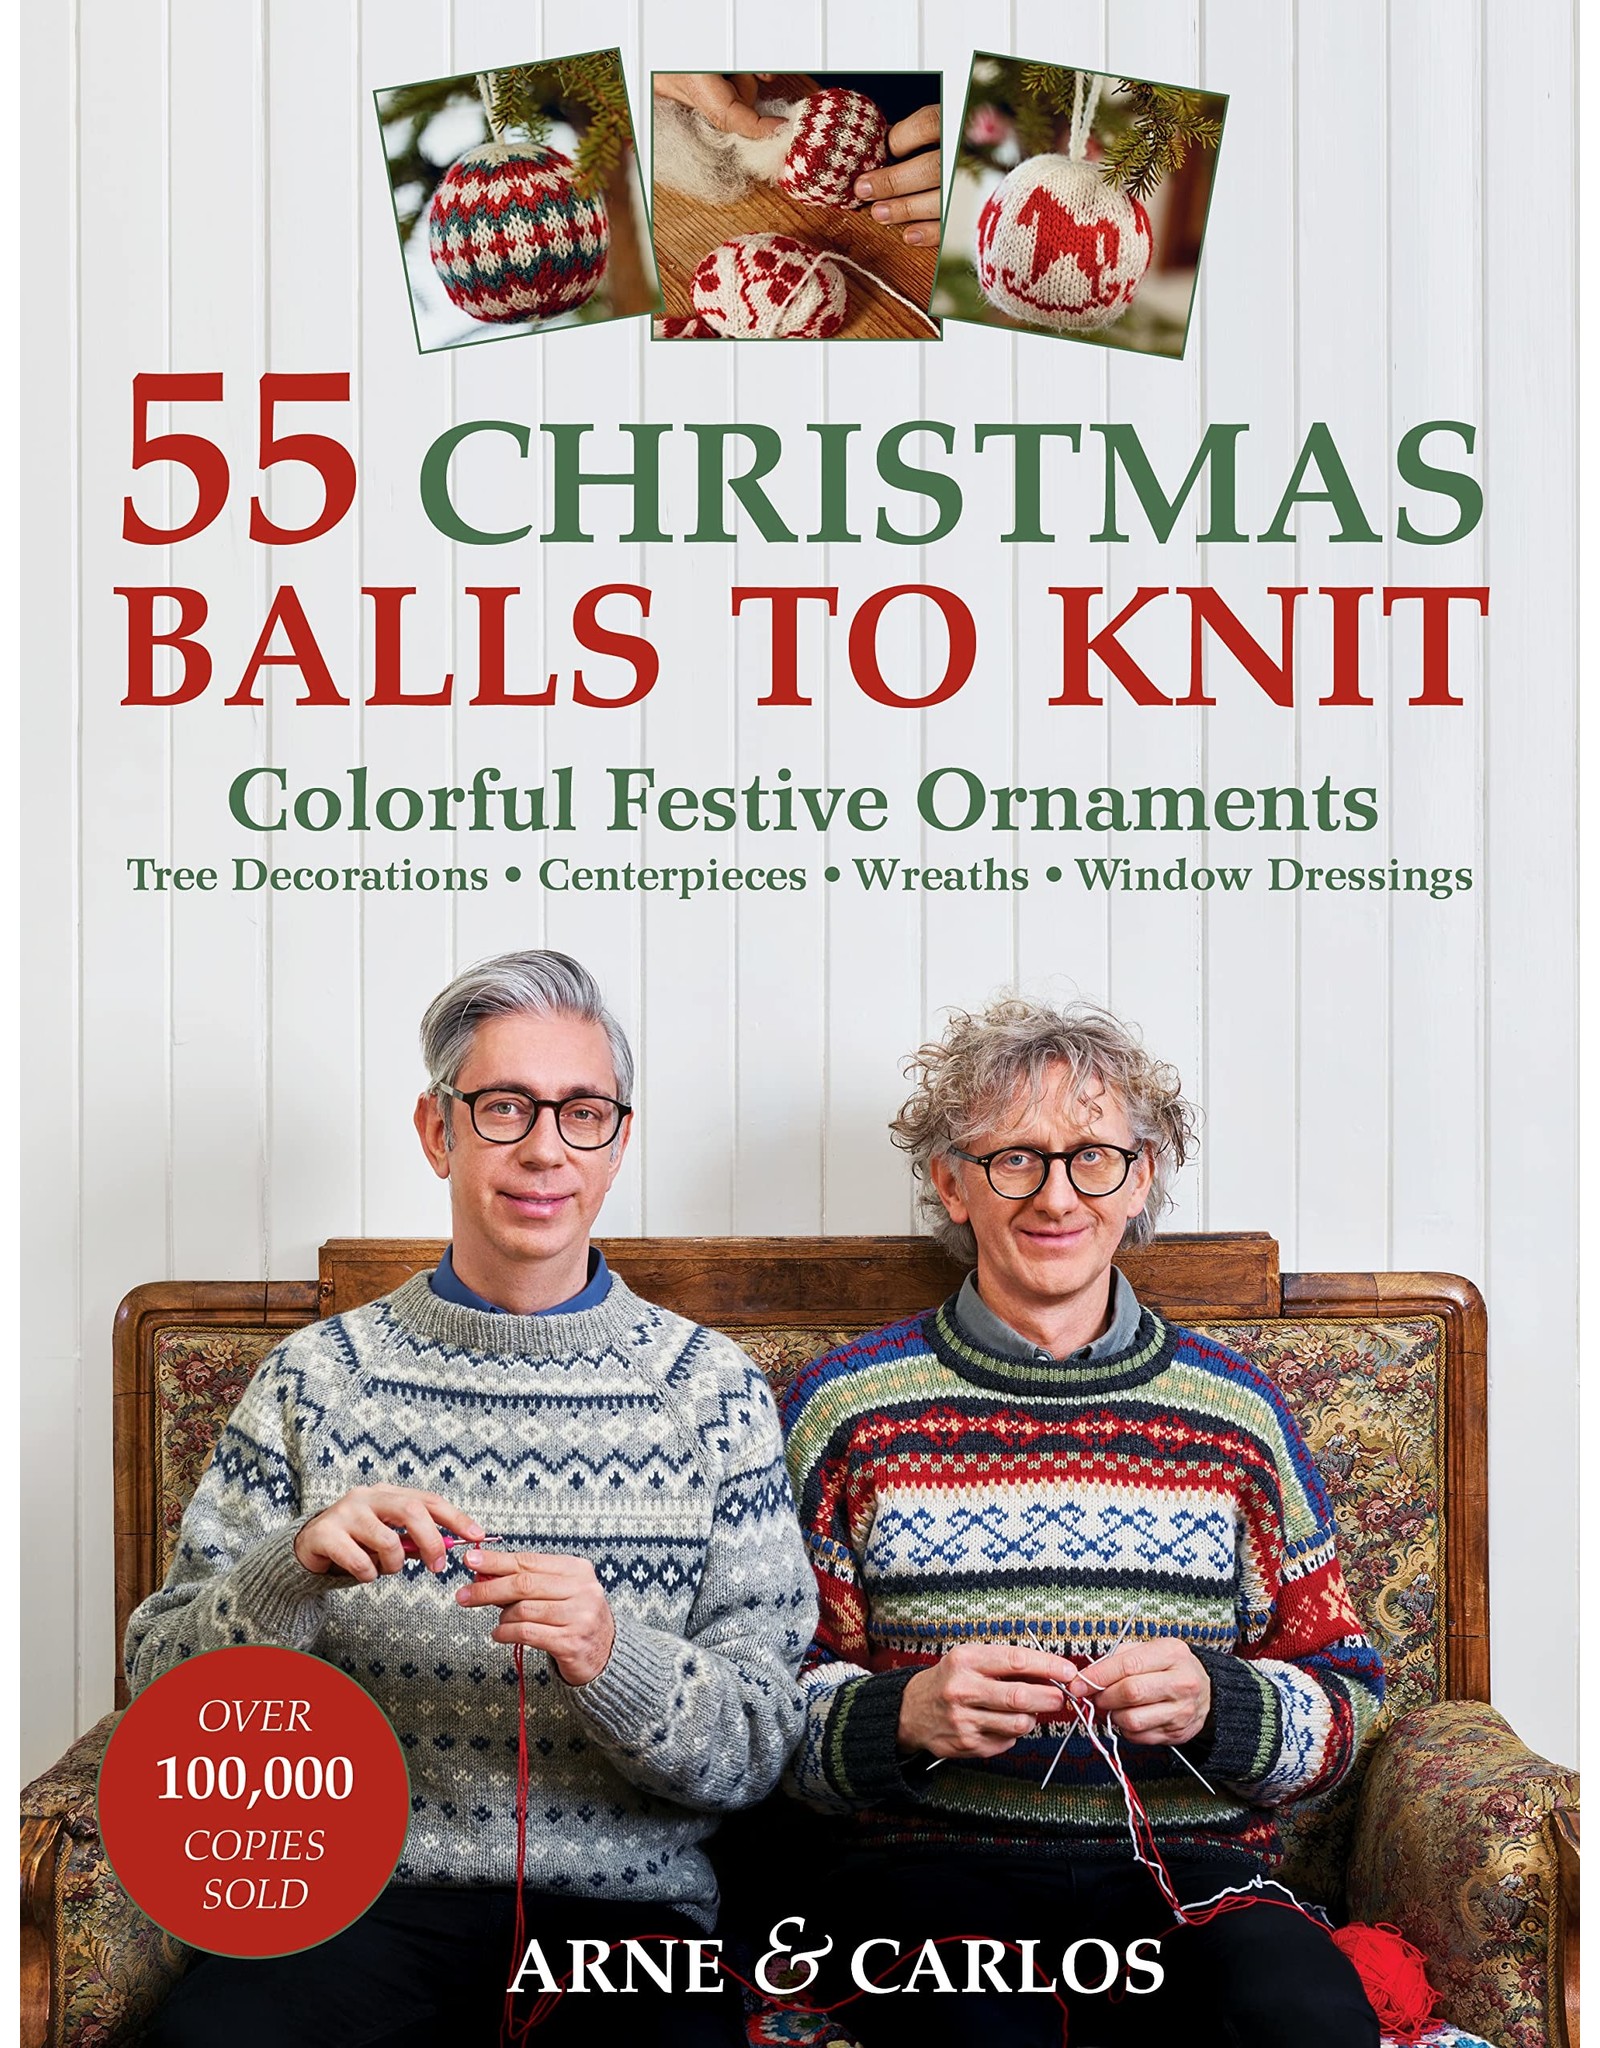 Arne & Carlos 55 Christmas Balls to Knit by Arne & Carlos